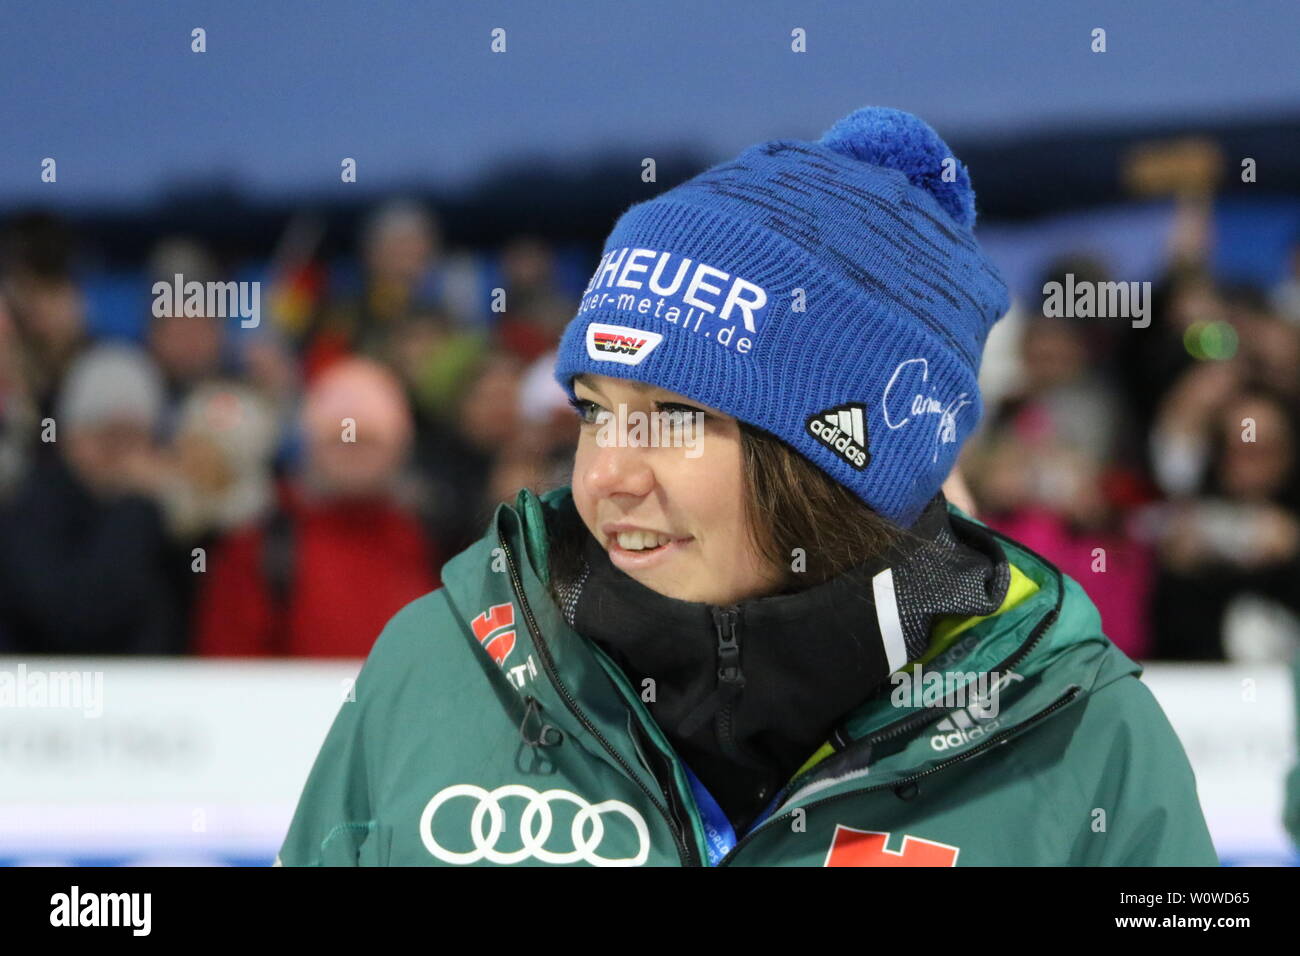 Carina Vogt (SC Degenfeld) bei der Siegerehrung zum Mixed Team Skispringen,  FIS Nordische Ski-WM 2019 in Seefeld Stock Photo - Alamy